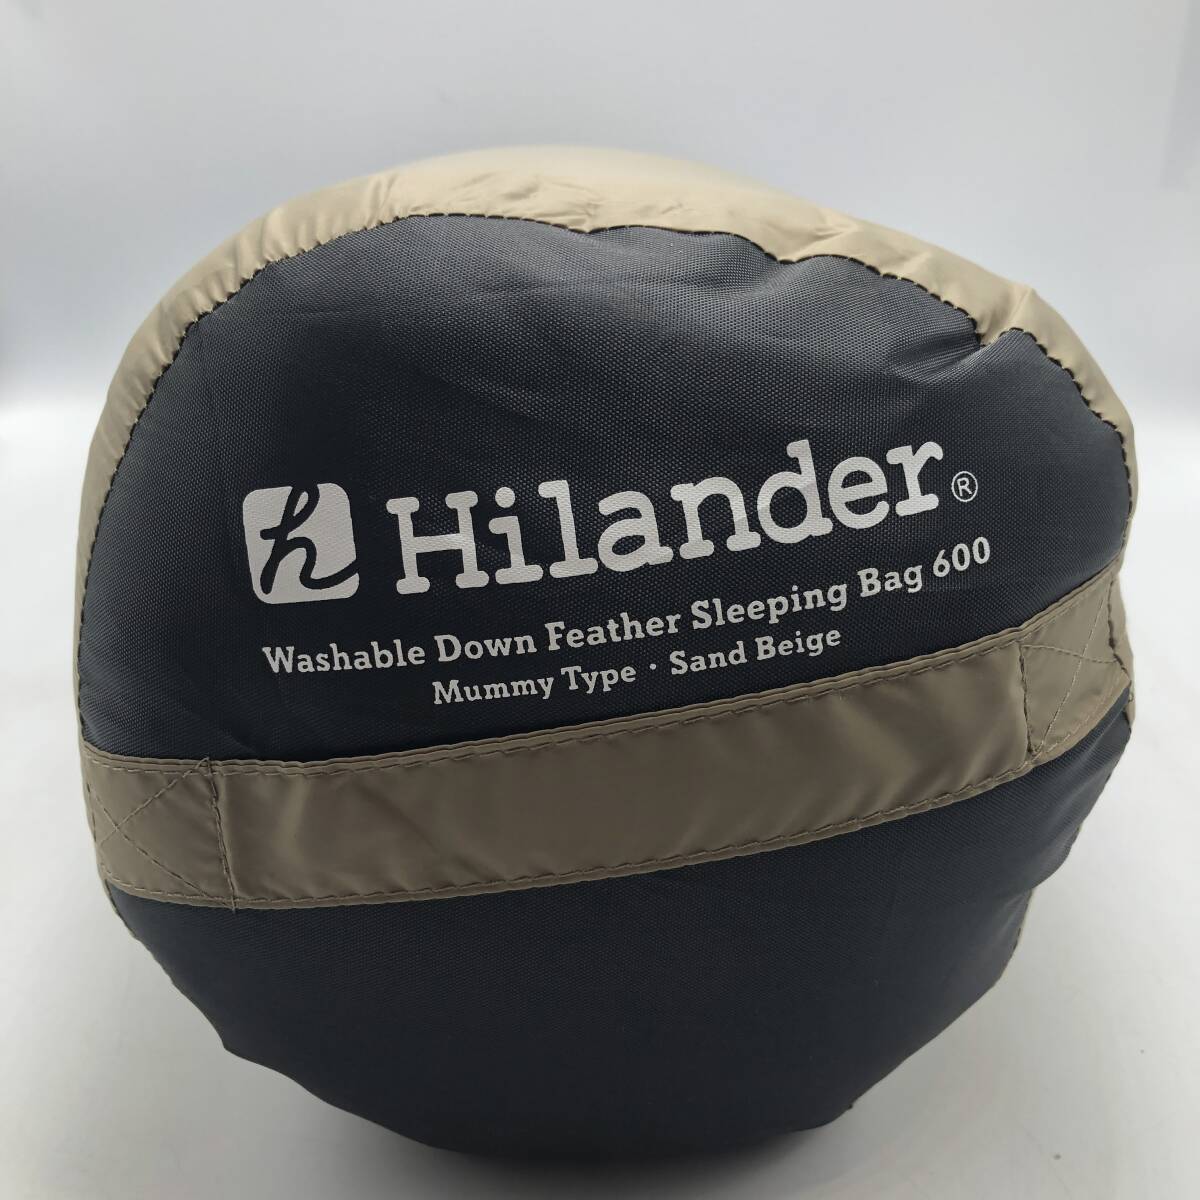 【新品未使用】Hilander(ハイランダー) 洗えるダウンフェザーシュラフ 600 5℃ サンドベージュ N-071 /Y20916-D3_画像4